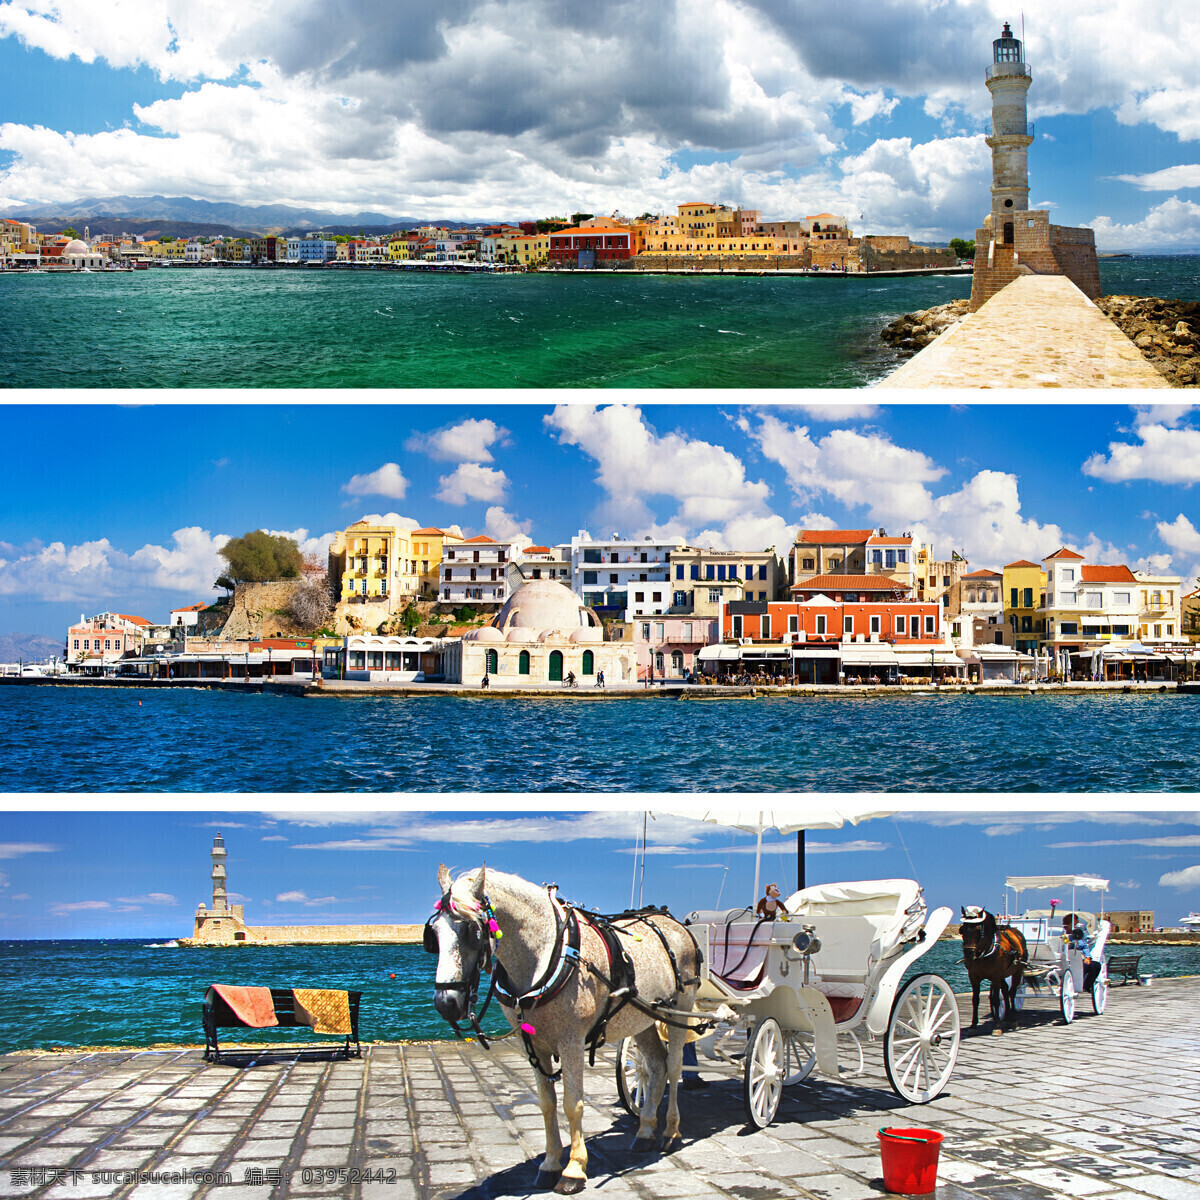 美丽 希腊 海岸 风景图片 马车 灯塔 建筑风景 希腊风景 海岸风景 海岸城市风景 旅游景点 美丽风景 美景 城市风光 环境家居 白色